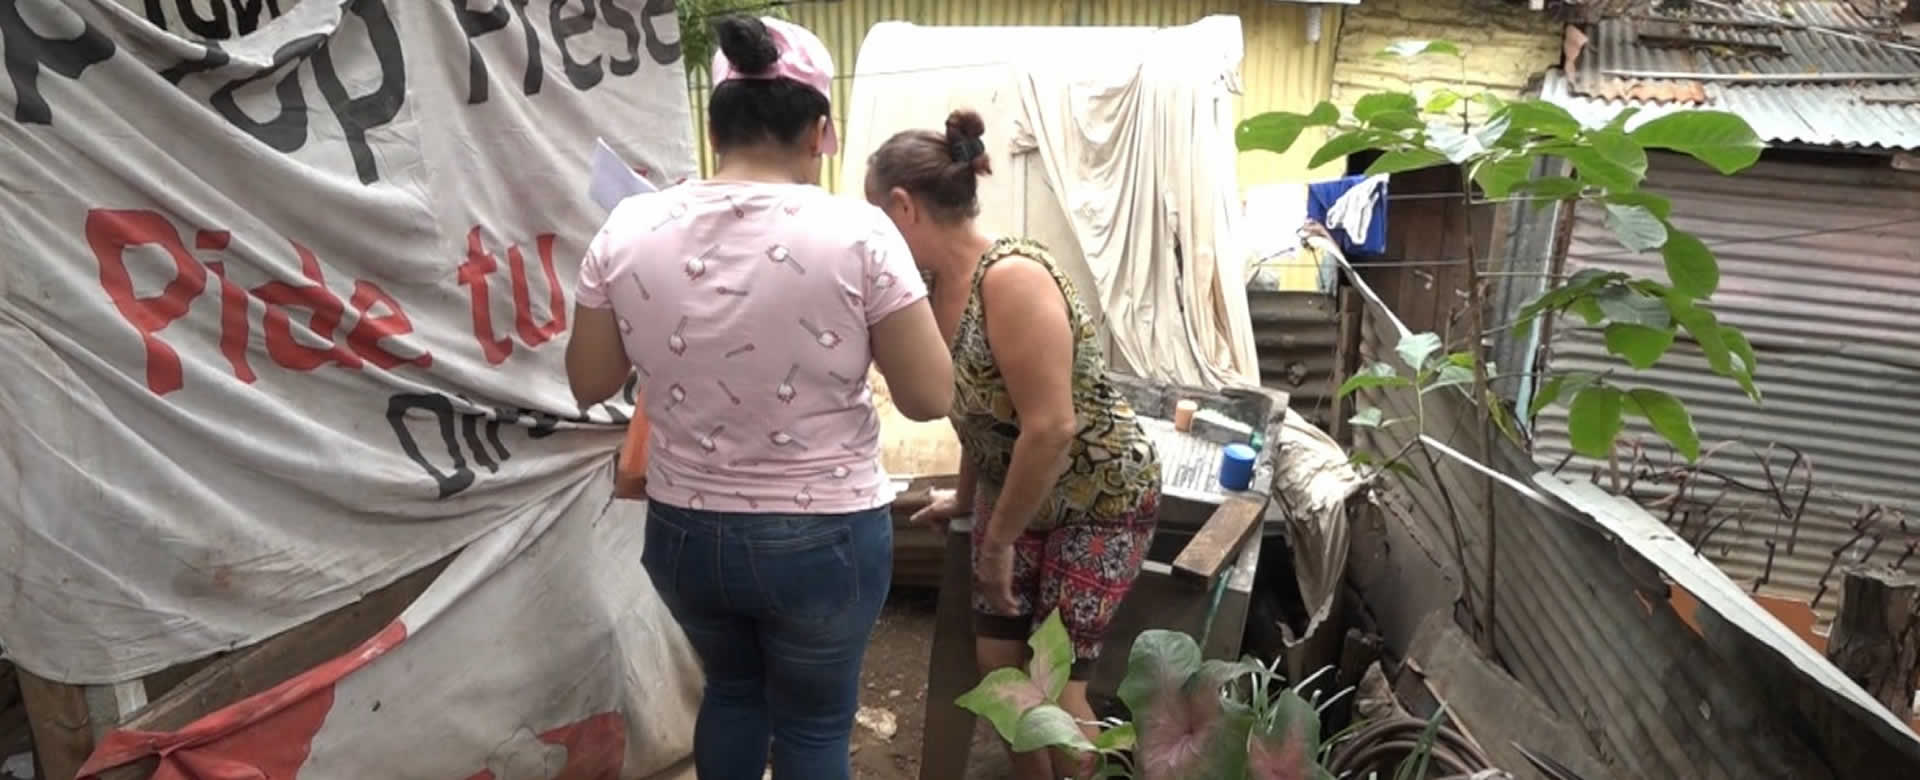 Ministerio de Salud continúa velando por el bienestar de los nicaragüenses